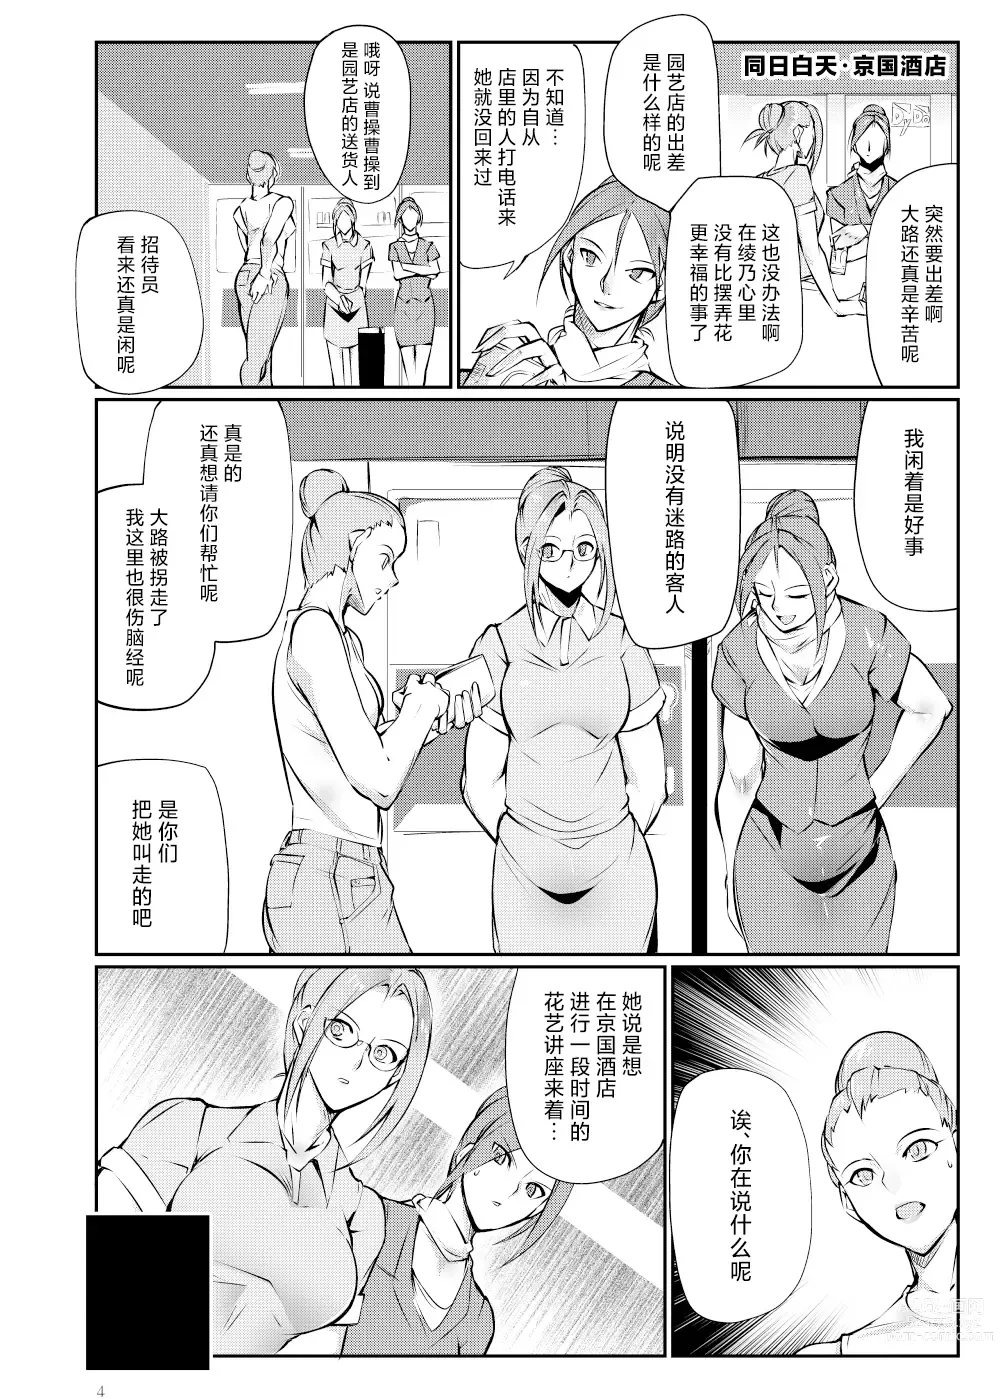 Page 3 of doujinshi Tougijou Rin - Arena Rin 3